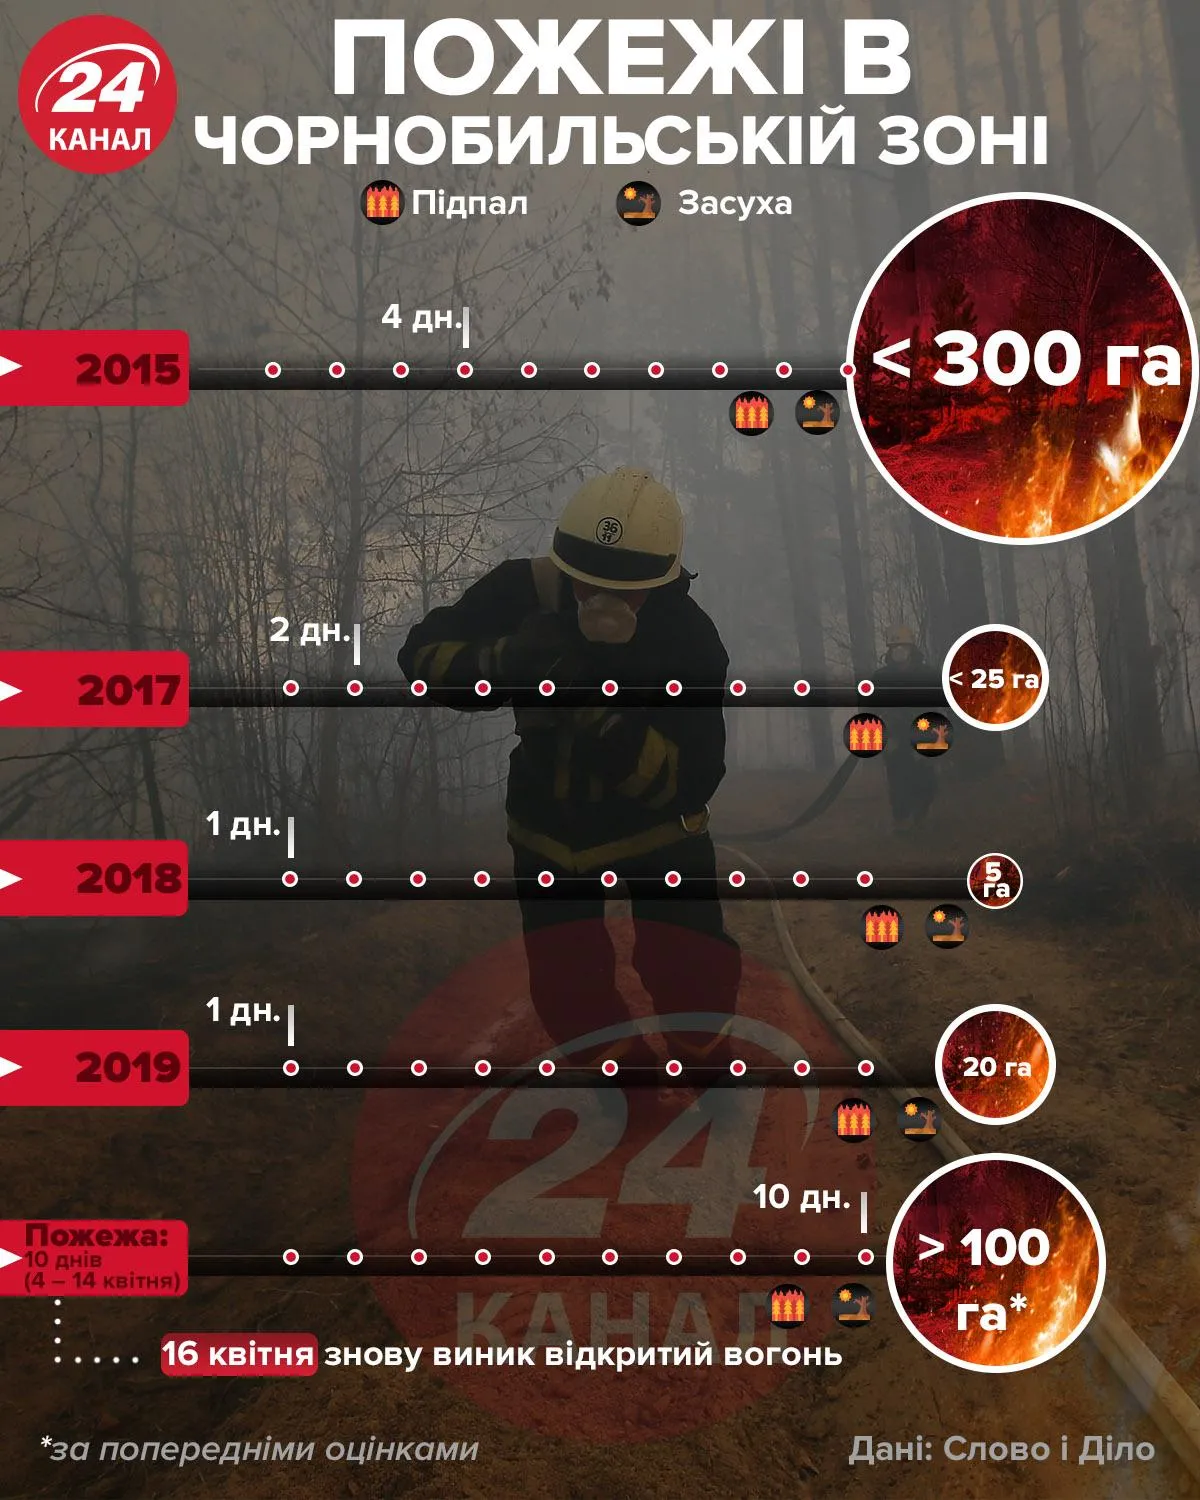 Пожежі в Чорнобильській зоні інфографіка 24 канал